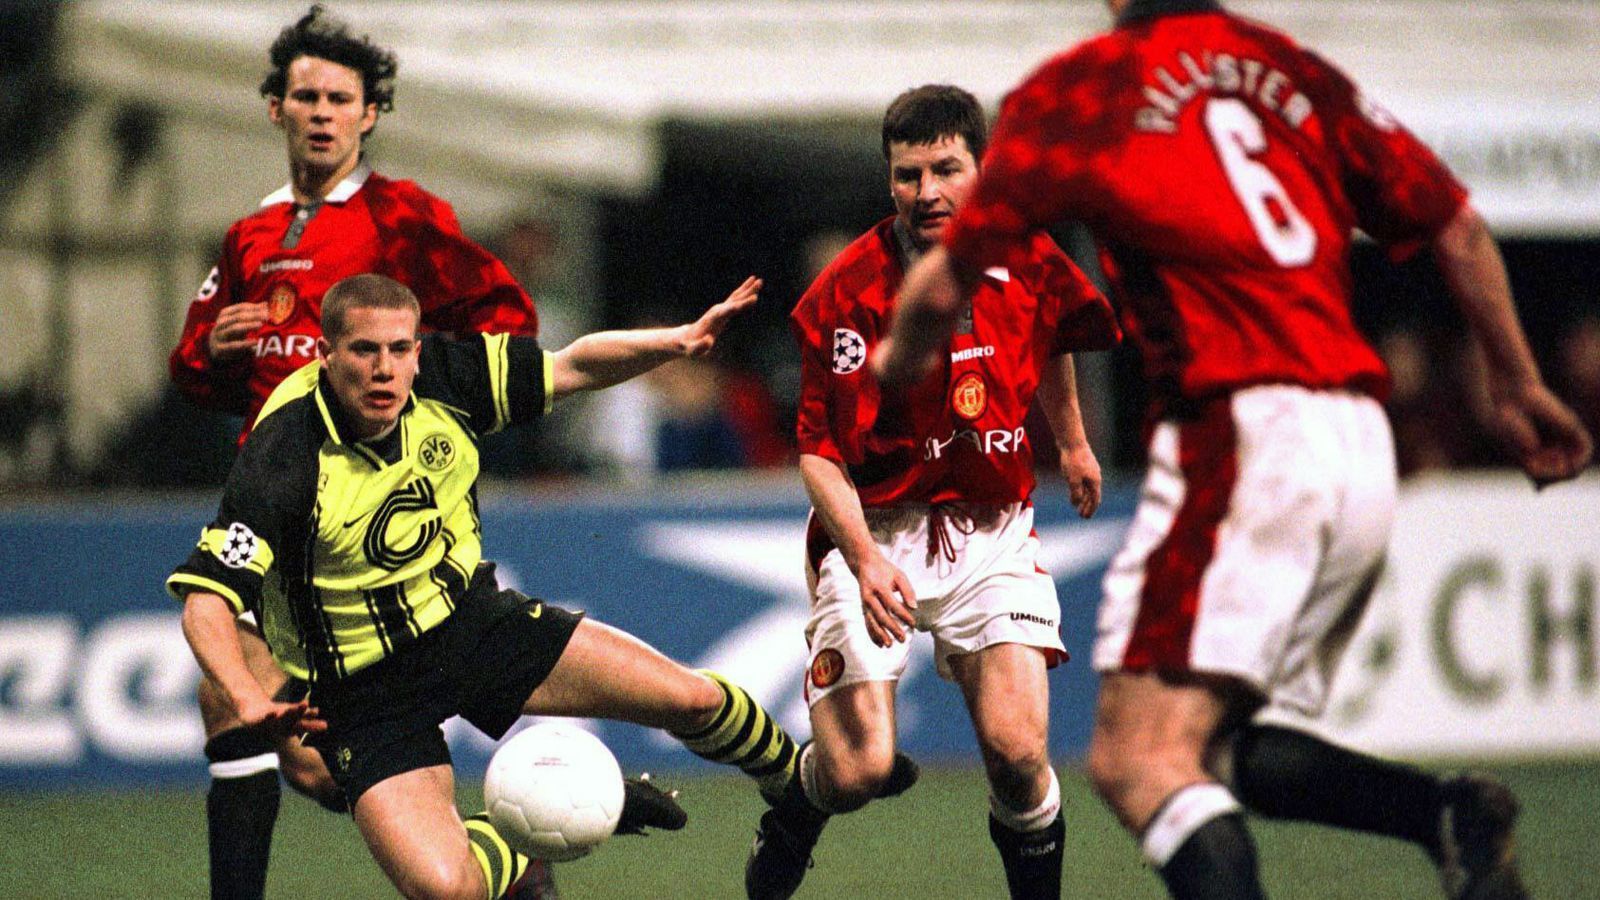 
                <strong>Manchester United - Borussia Dortmund 0:1 (Halbfinal-Rückspiel 1996/97)</strong><br>
                Bei Dortmunds bislang einzigem Champions-League-Triumph im Jahr 1997 kam es im Halbfinale zum Duell der Borussia mit Manchester United. Nach einem 1:0-Hinspiel-Sieg reiste der BVB mit einem knappen Vorsprung nach Manchester, wo Lars Ricken (li.) die Dortmunder in der achten Minute mit 1:0 in Führung brachte. Danach lieferte Dortmund eine mehr als 80-minütige Abwehrschlacht ab, die die damalige Elf von Coach Ottmar Hitzfeld ohne Gegentreffer überstand und so ins Endspiel gegen Juventus Turin einzog.
              